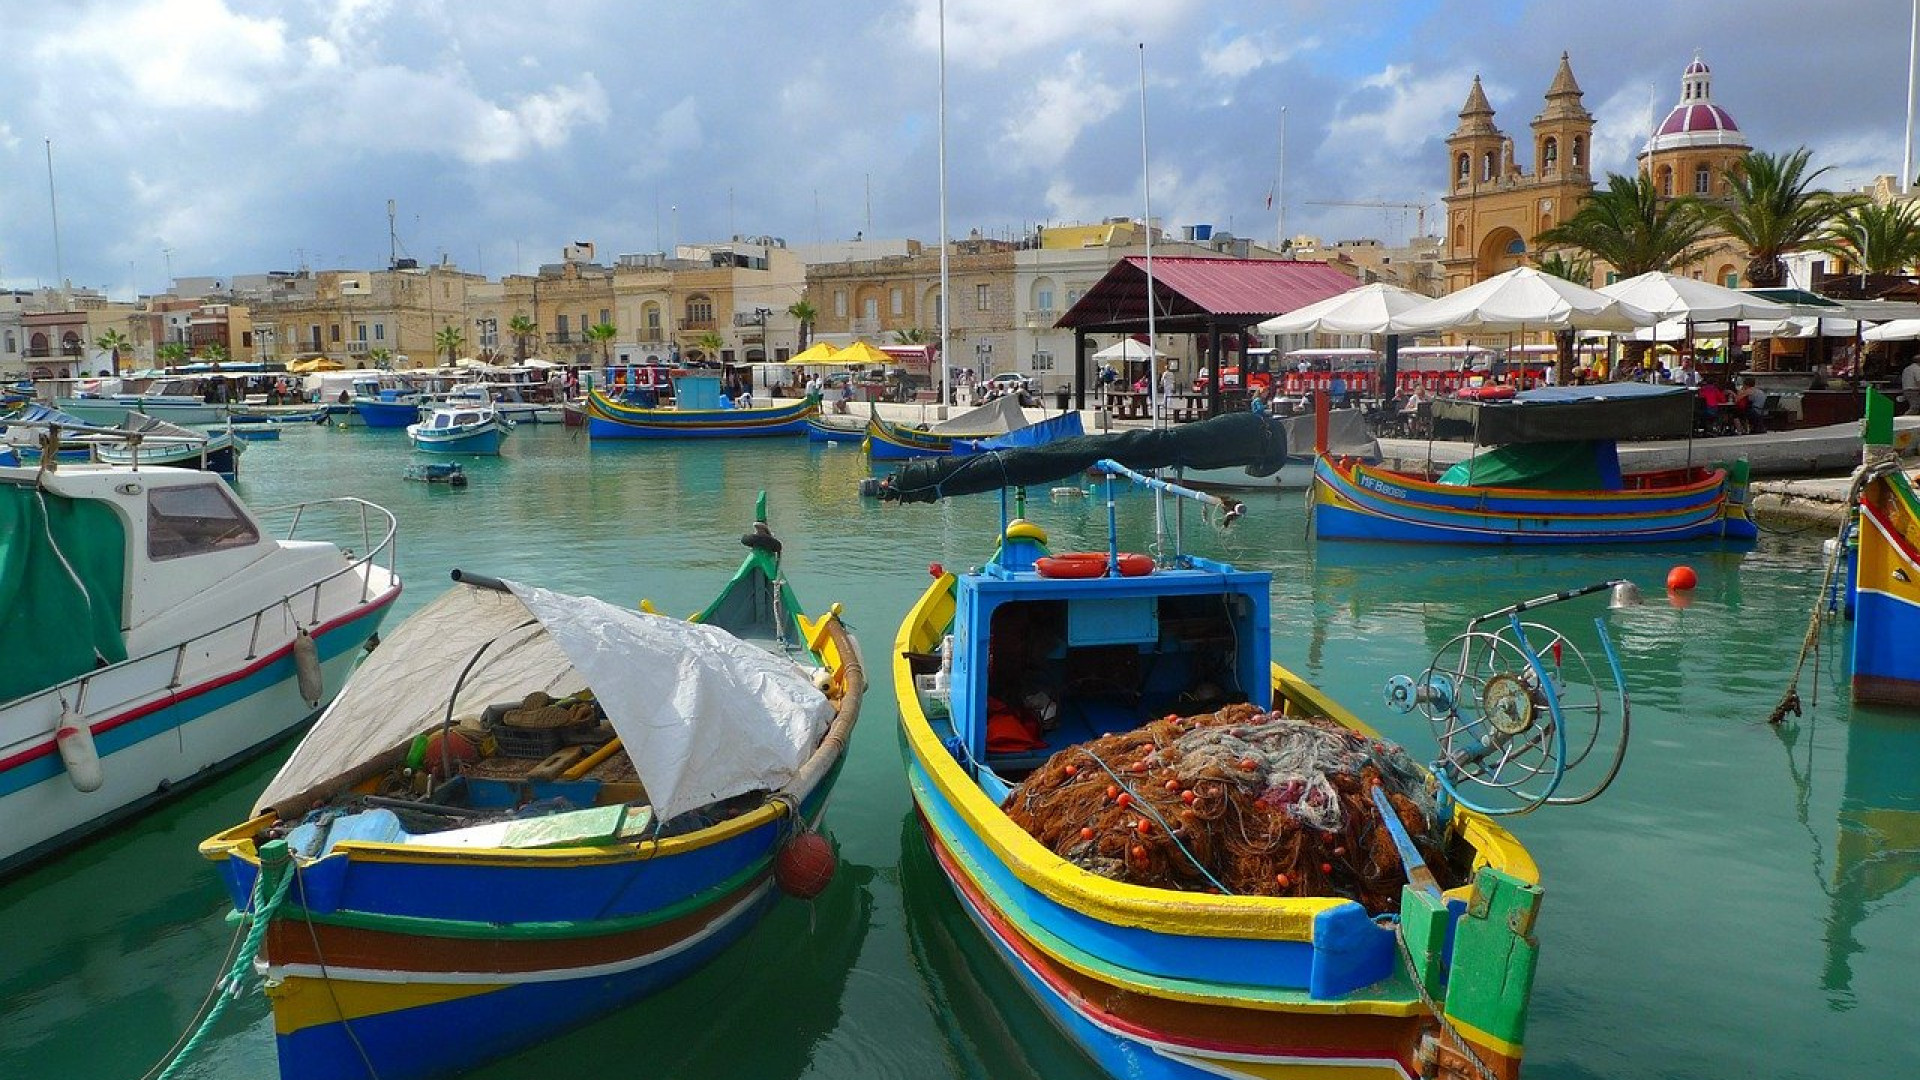 Μάλτα, Σικελία και Σαρδηνία: τρία κοσμήματα της Μεσογείου που πρέπει να ανακαλύψετε